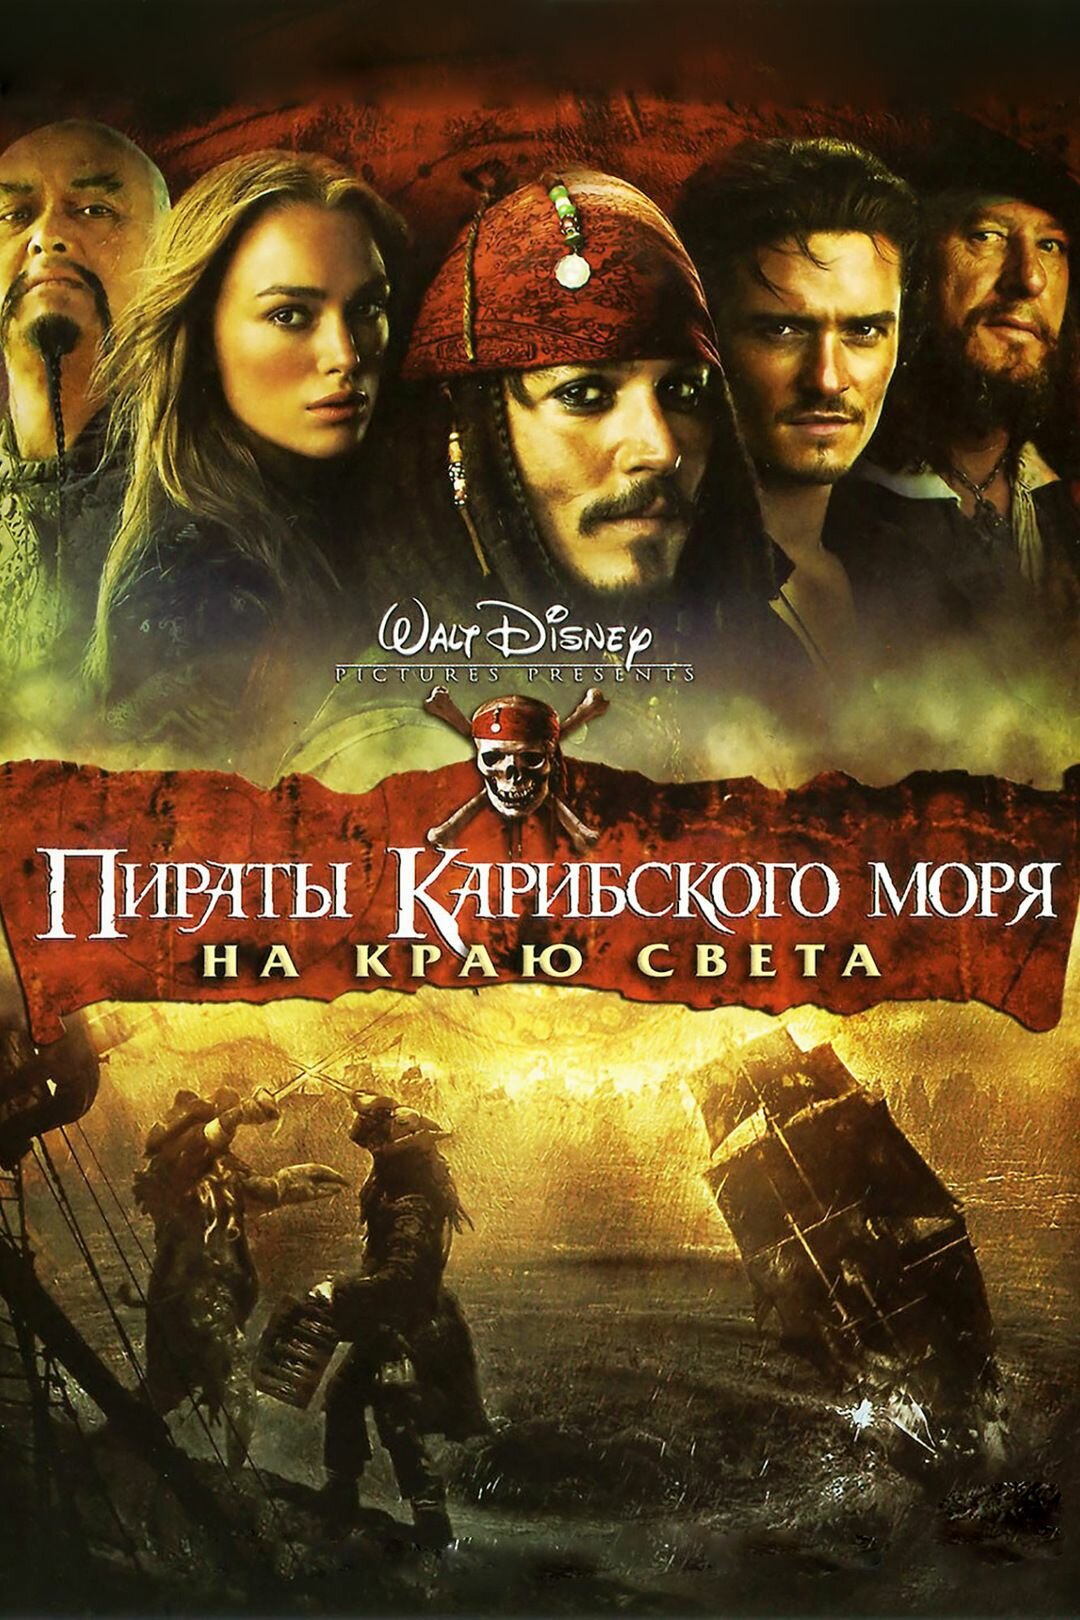 Пираты Карибского моря: На краю света (2007) (DVD-R)